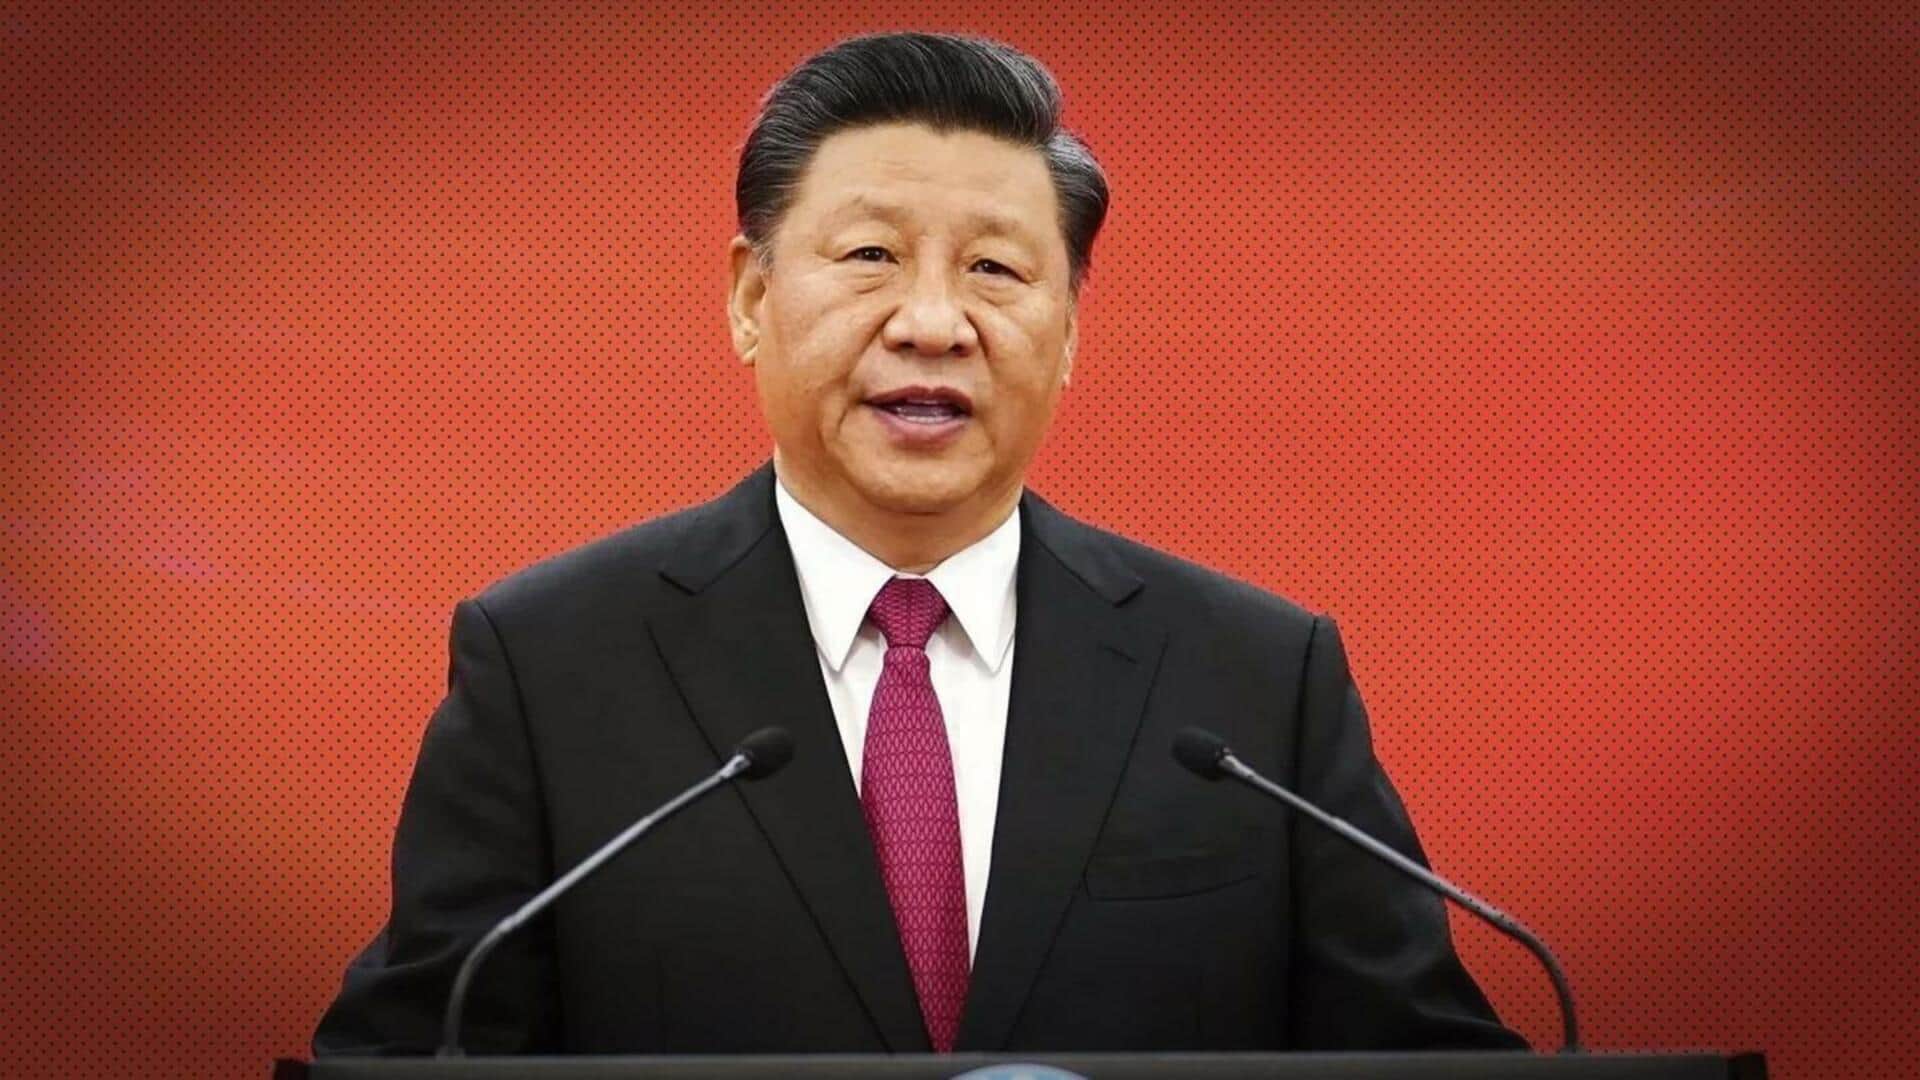 शी जिनपिंग लगातार तीसरी बार बने चीन के राष्ट्रपति, संसद ने दी मंजूरी 